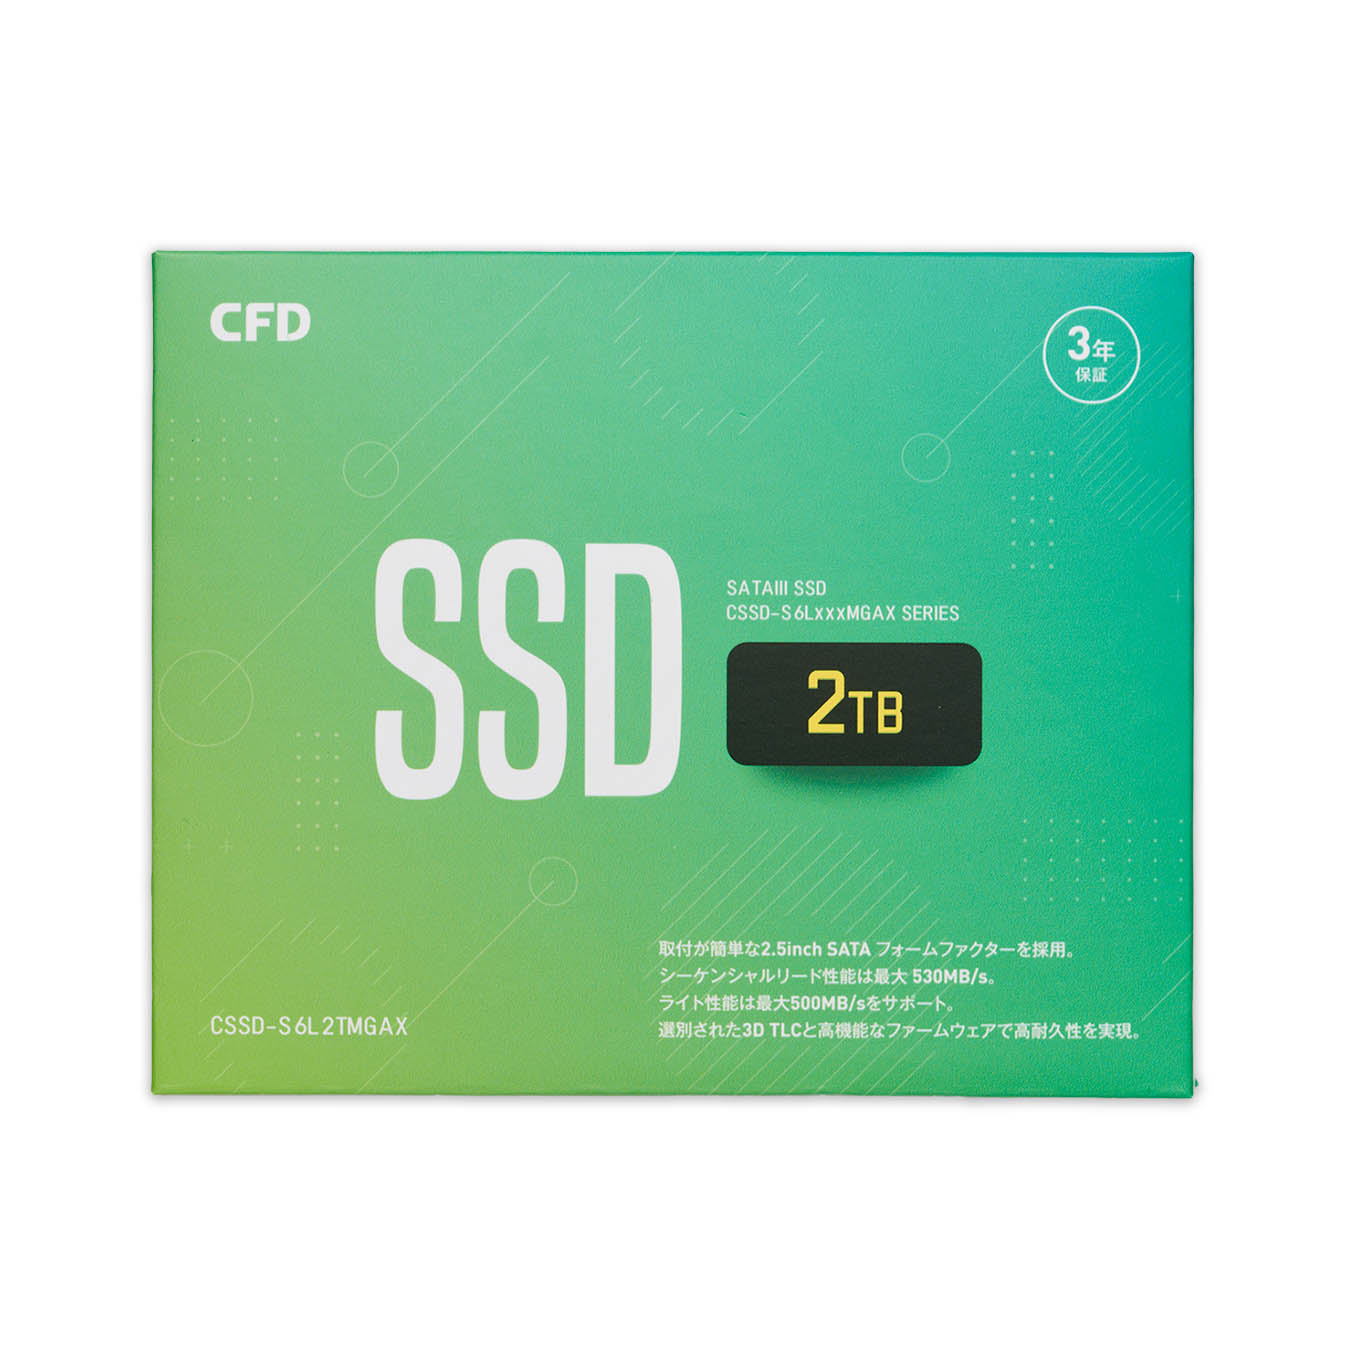 CSSD-S6L2TMGAX | CFD MGAX シリーズ SATA接続 2.5型 SSD 2TB | CFD